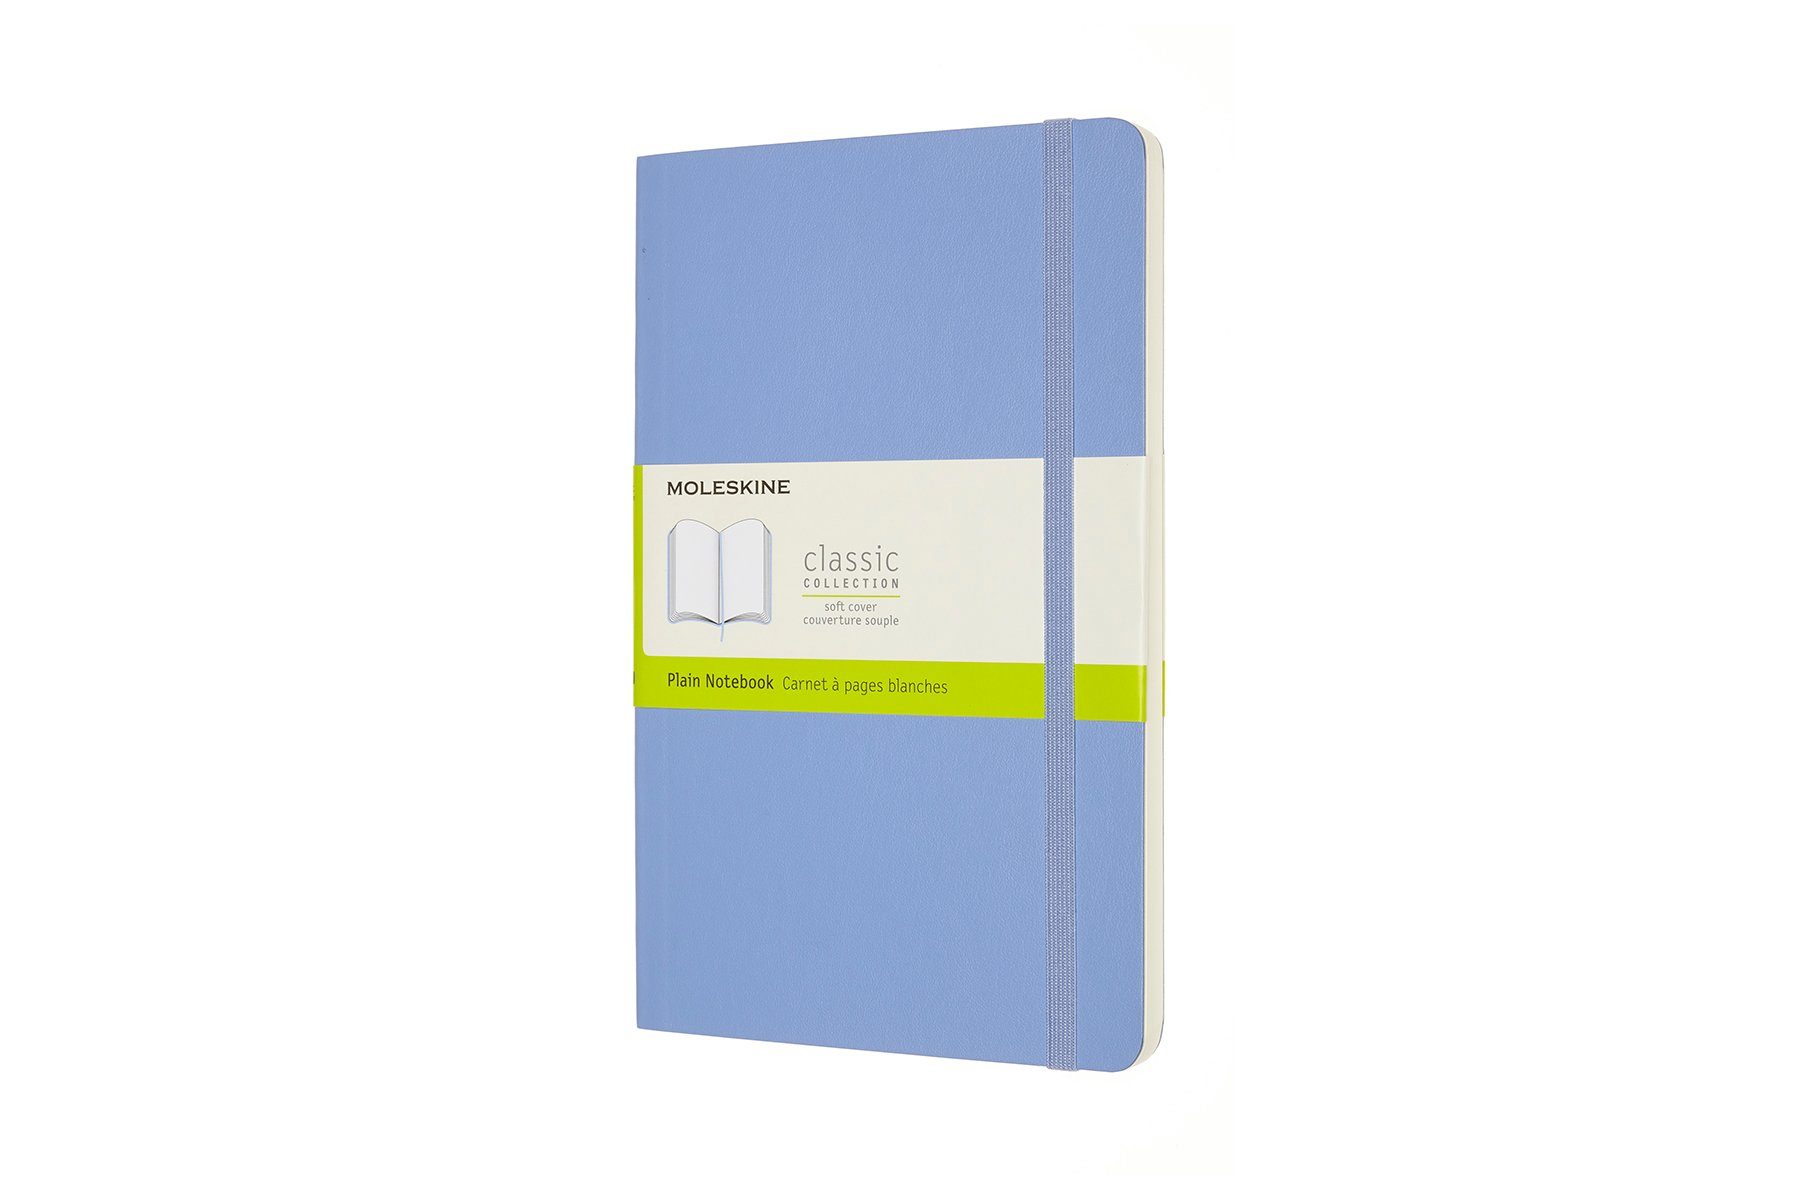 MOLESKINE Notizbuch, Classic Collection - Soft Cover - L/A5 Groß (13x21) - mit weichem Einband - 70g-Papier Hortensien Blau